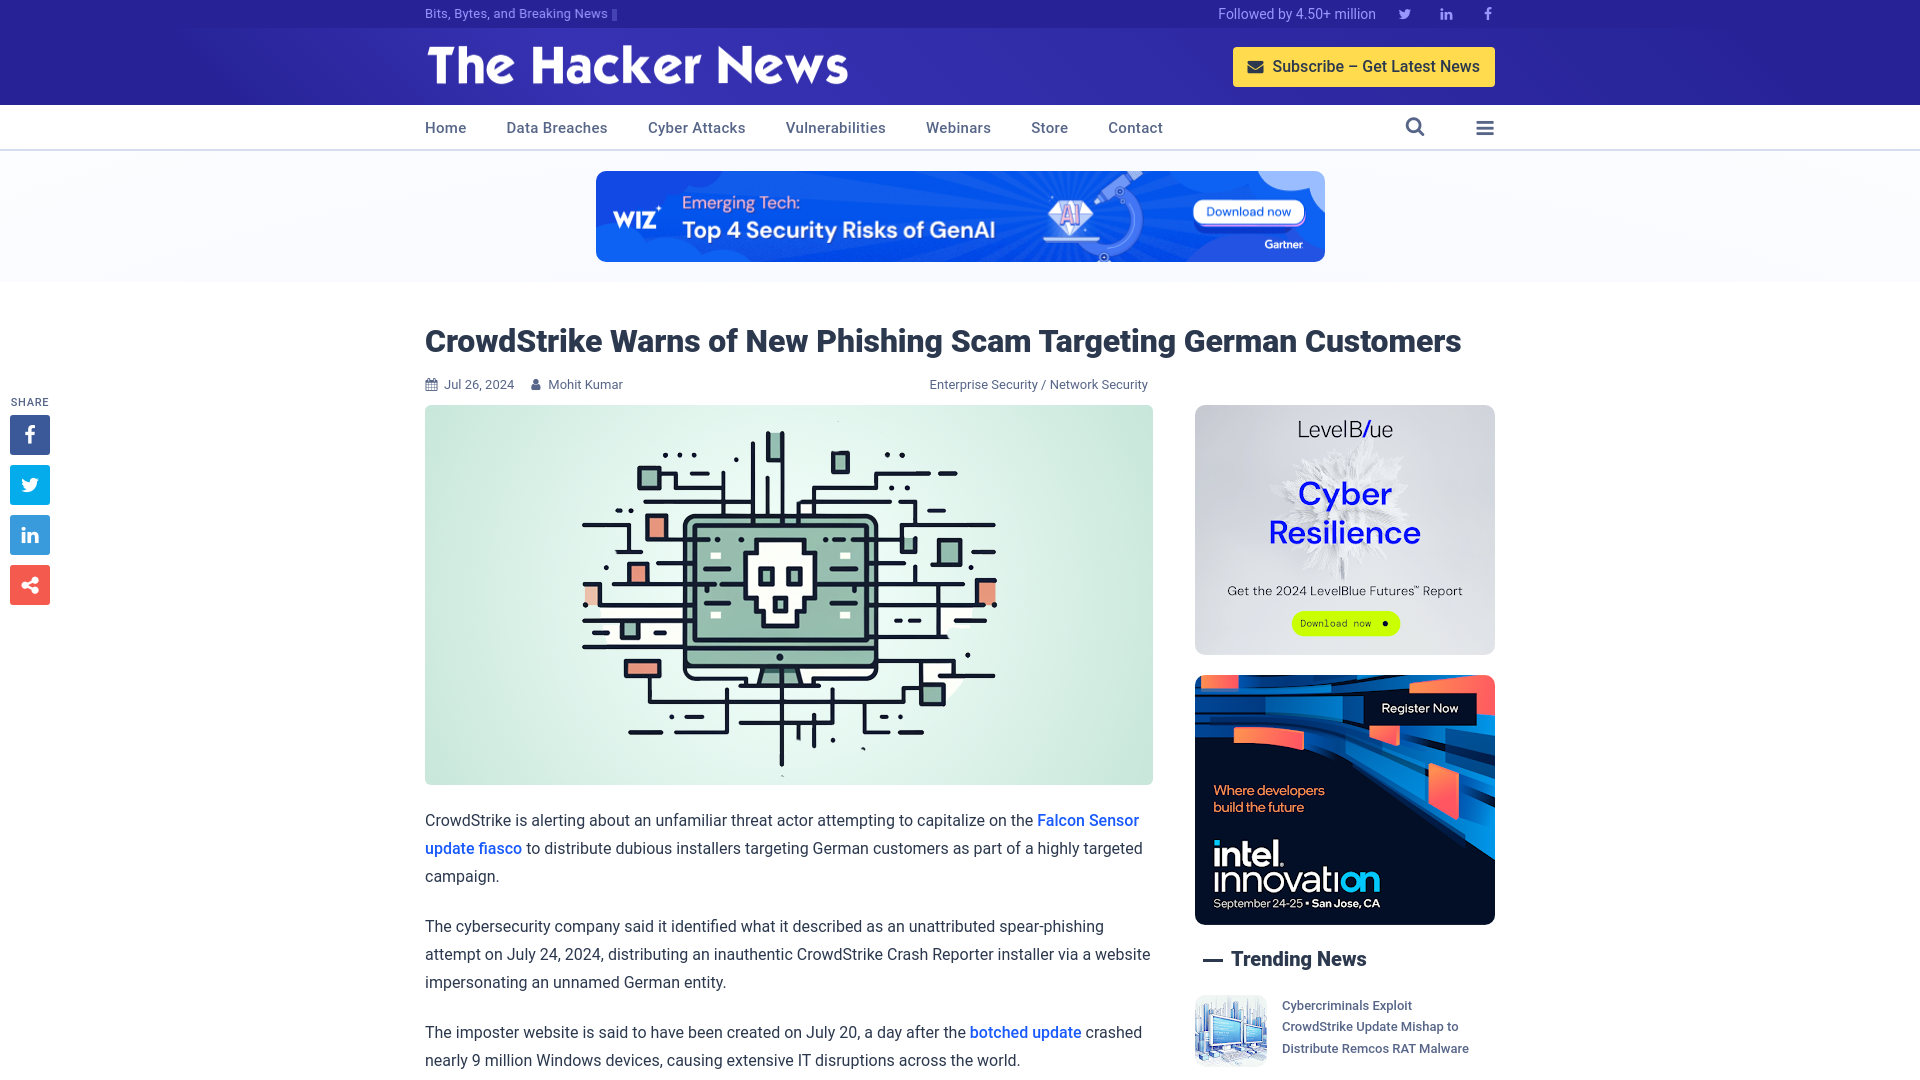 CrowdStrike Warns of New Phishing Scam Targeting German Customers